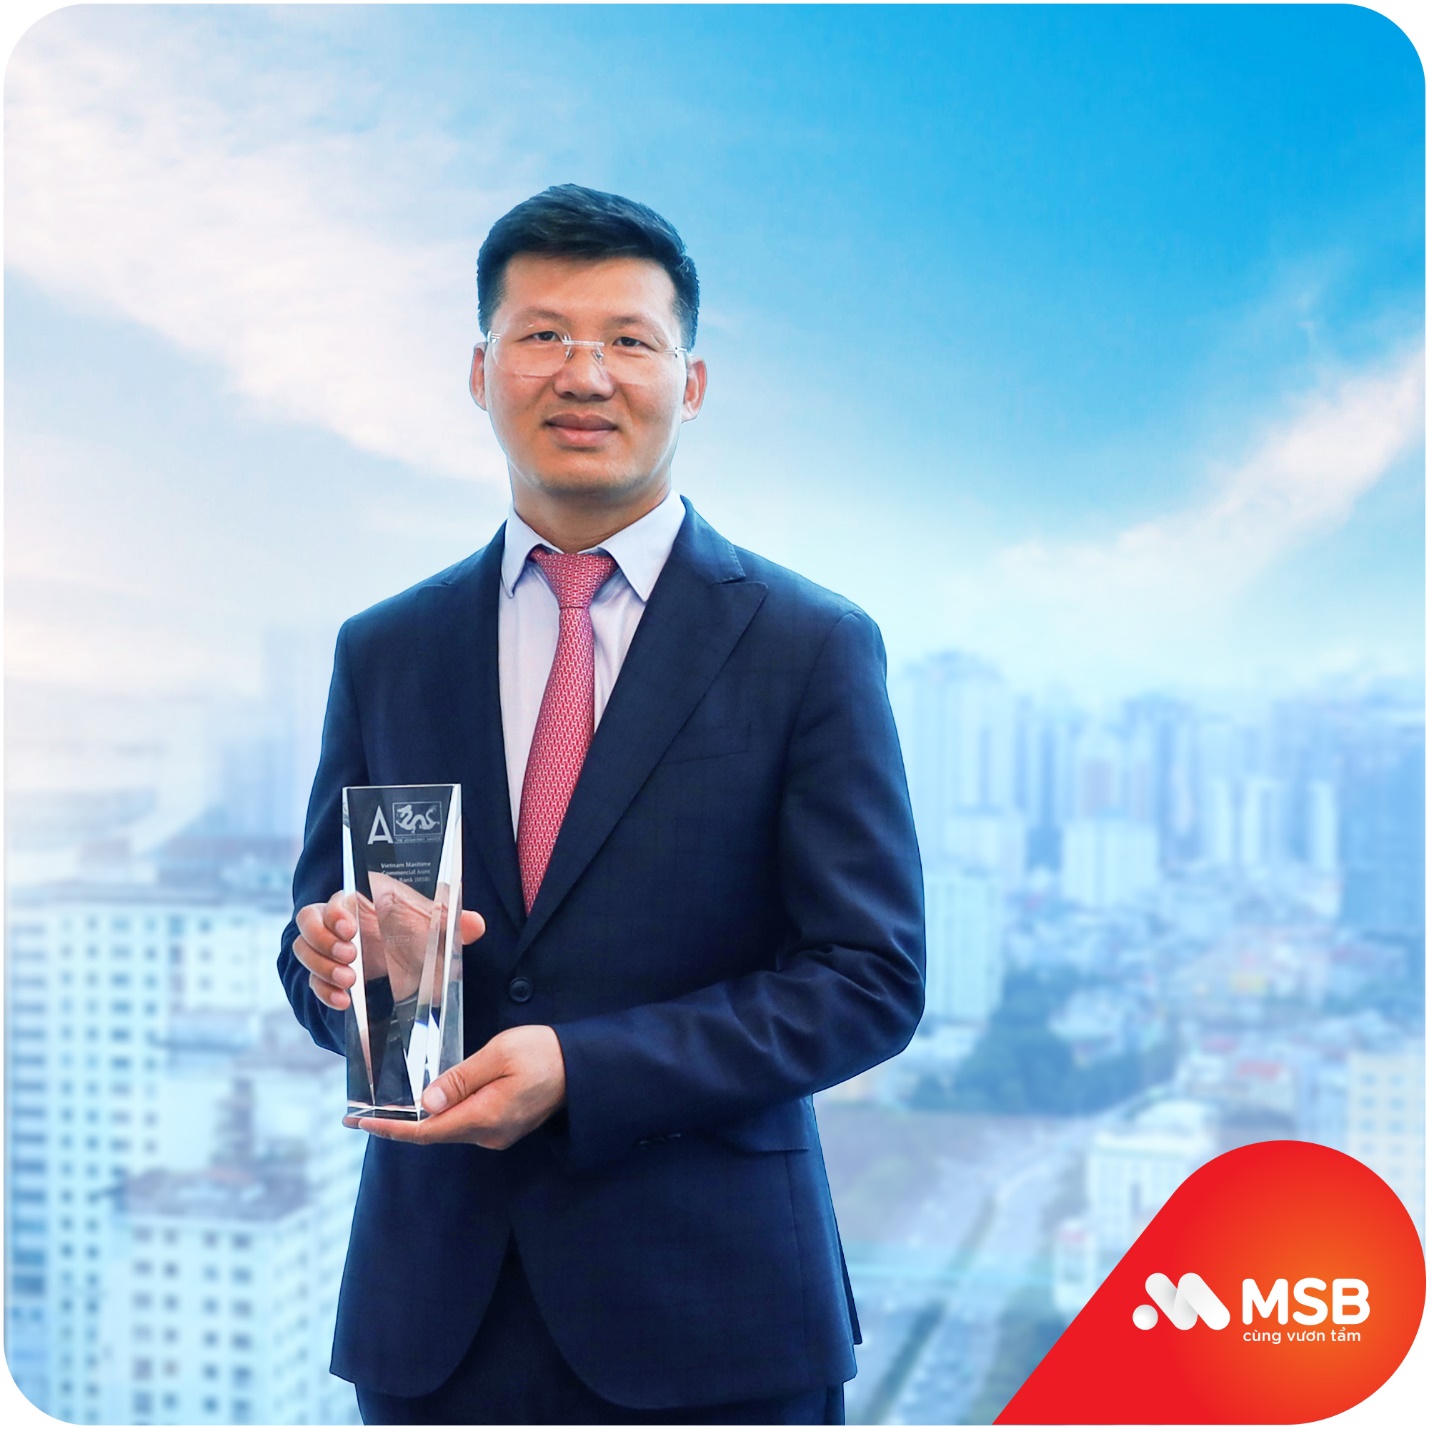 MSB nhận 2 giải thưởng quốc tế về giải pháp cho doanh nghiệp - Ảnh 1.